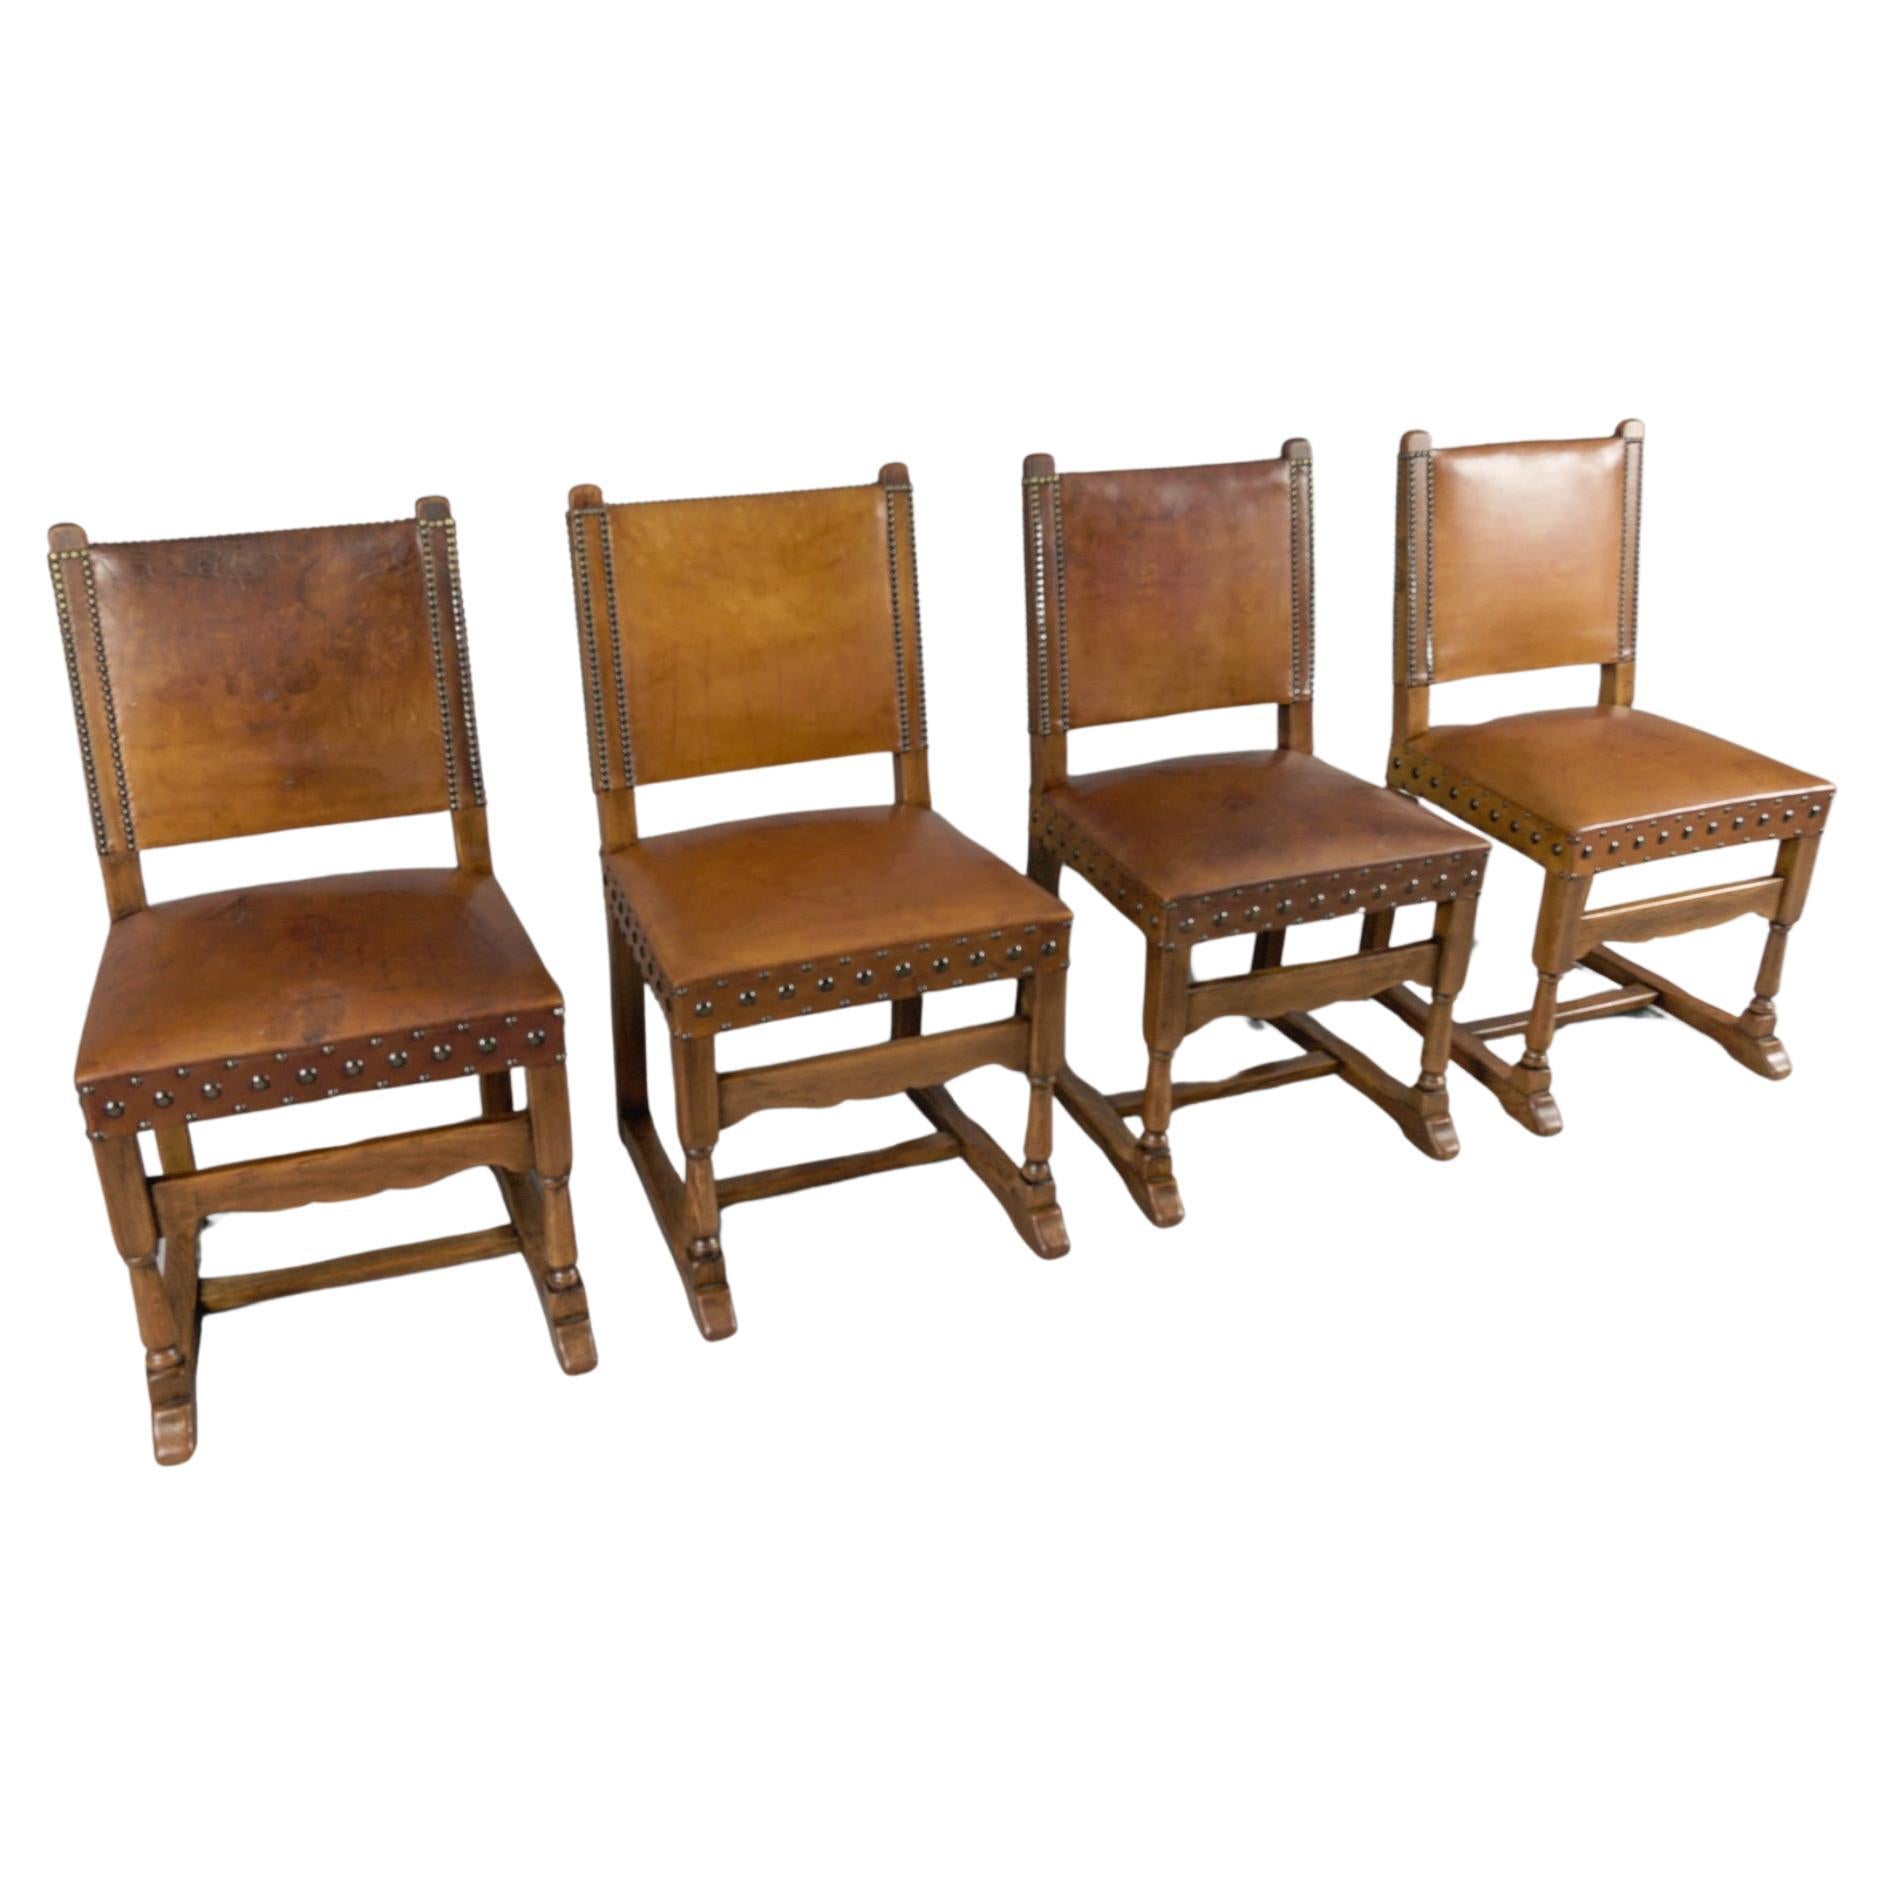  Spanische Stühle aus Leder und Holz, 4er-Set, 1940er-Jahre